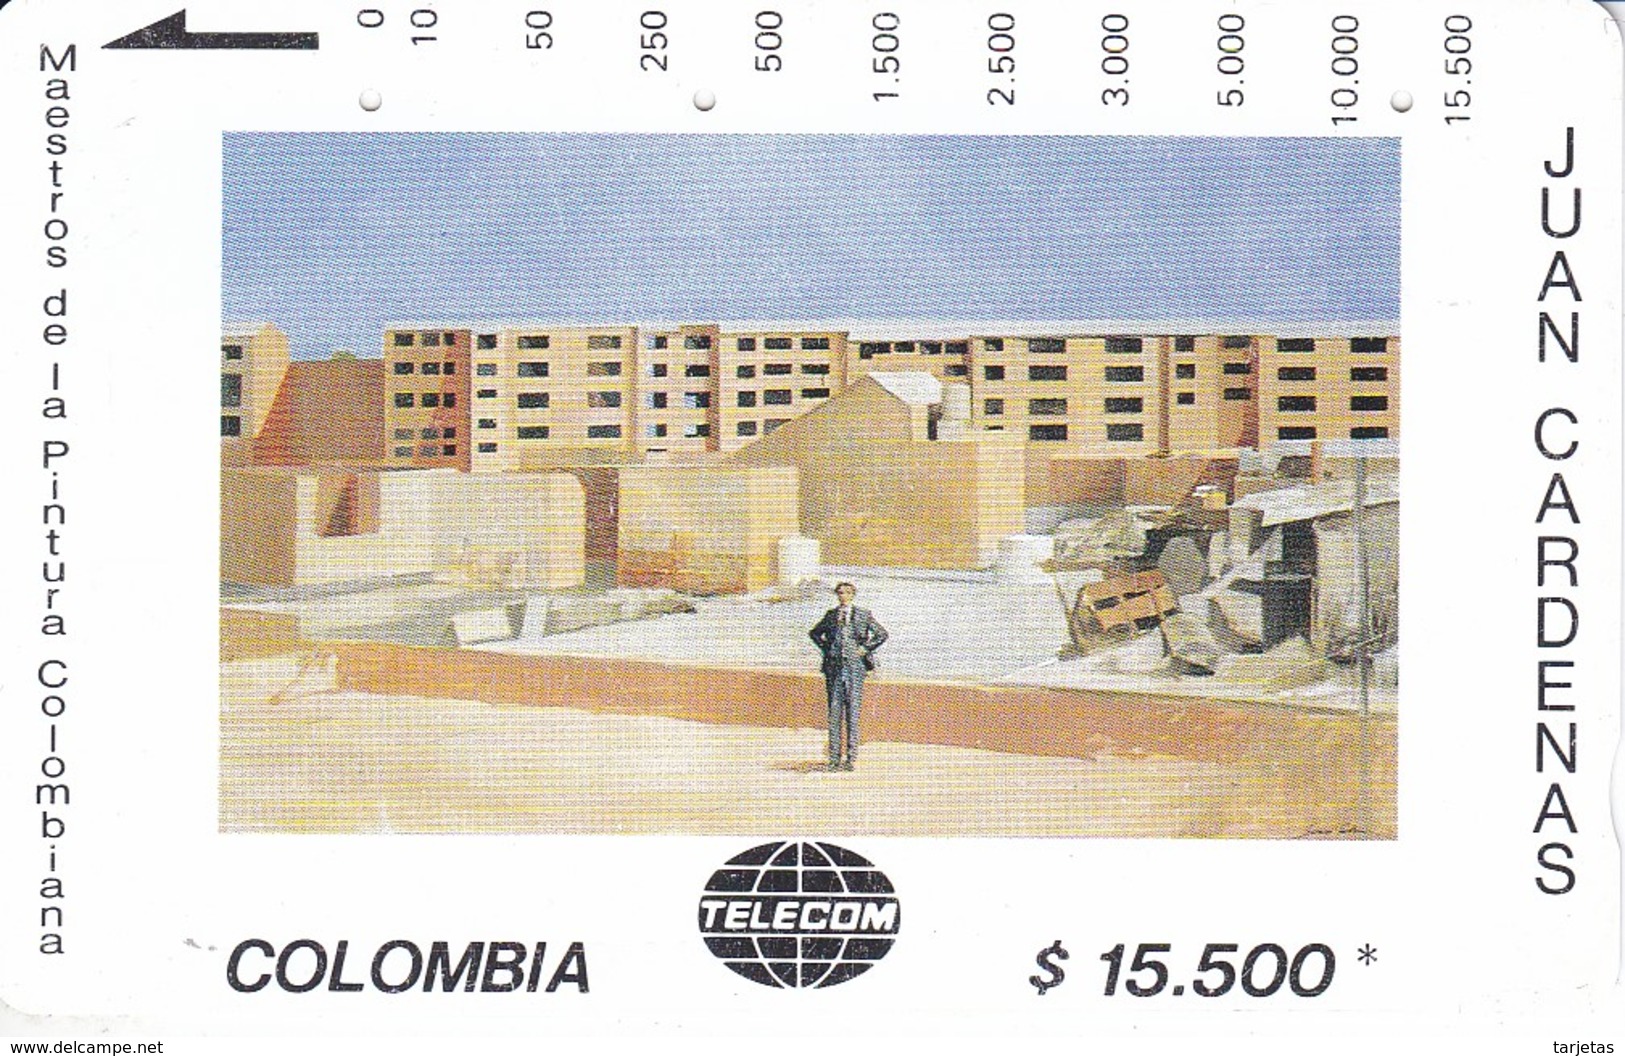 TARJETA DE COLOMBIA DE TELECOM DE $5500 MAESTROS DE LA PINTURA (JUAN CARDENAS) EDIFICIO - Colombia